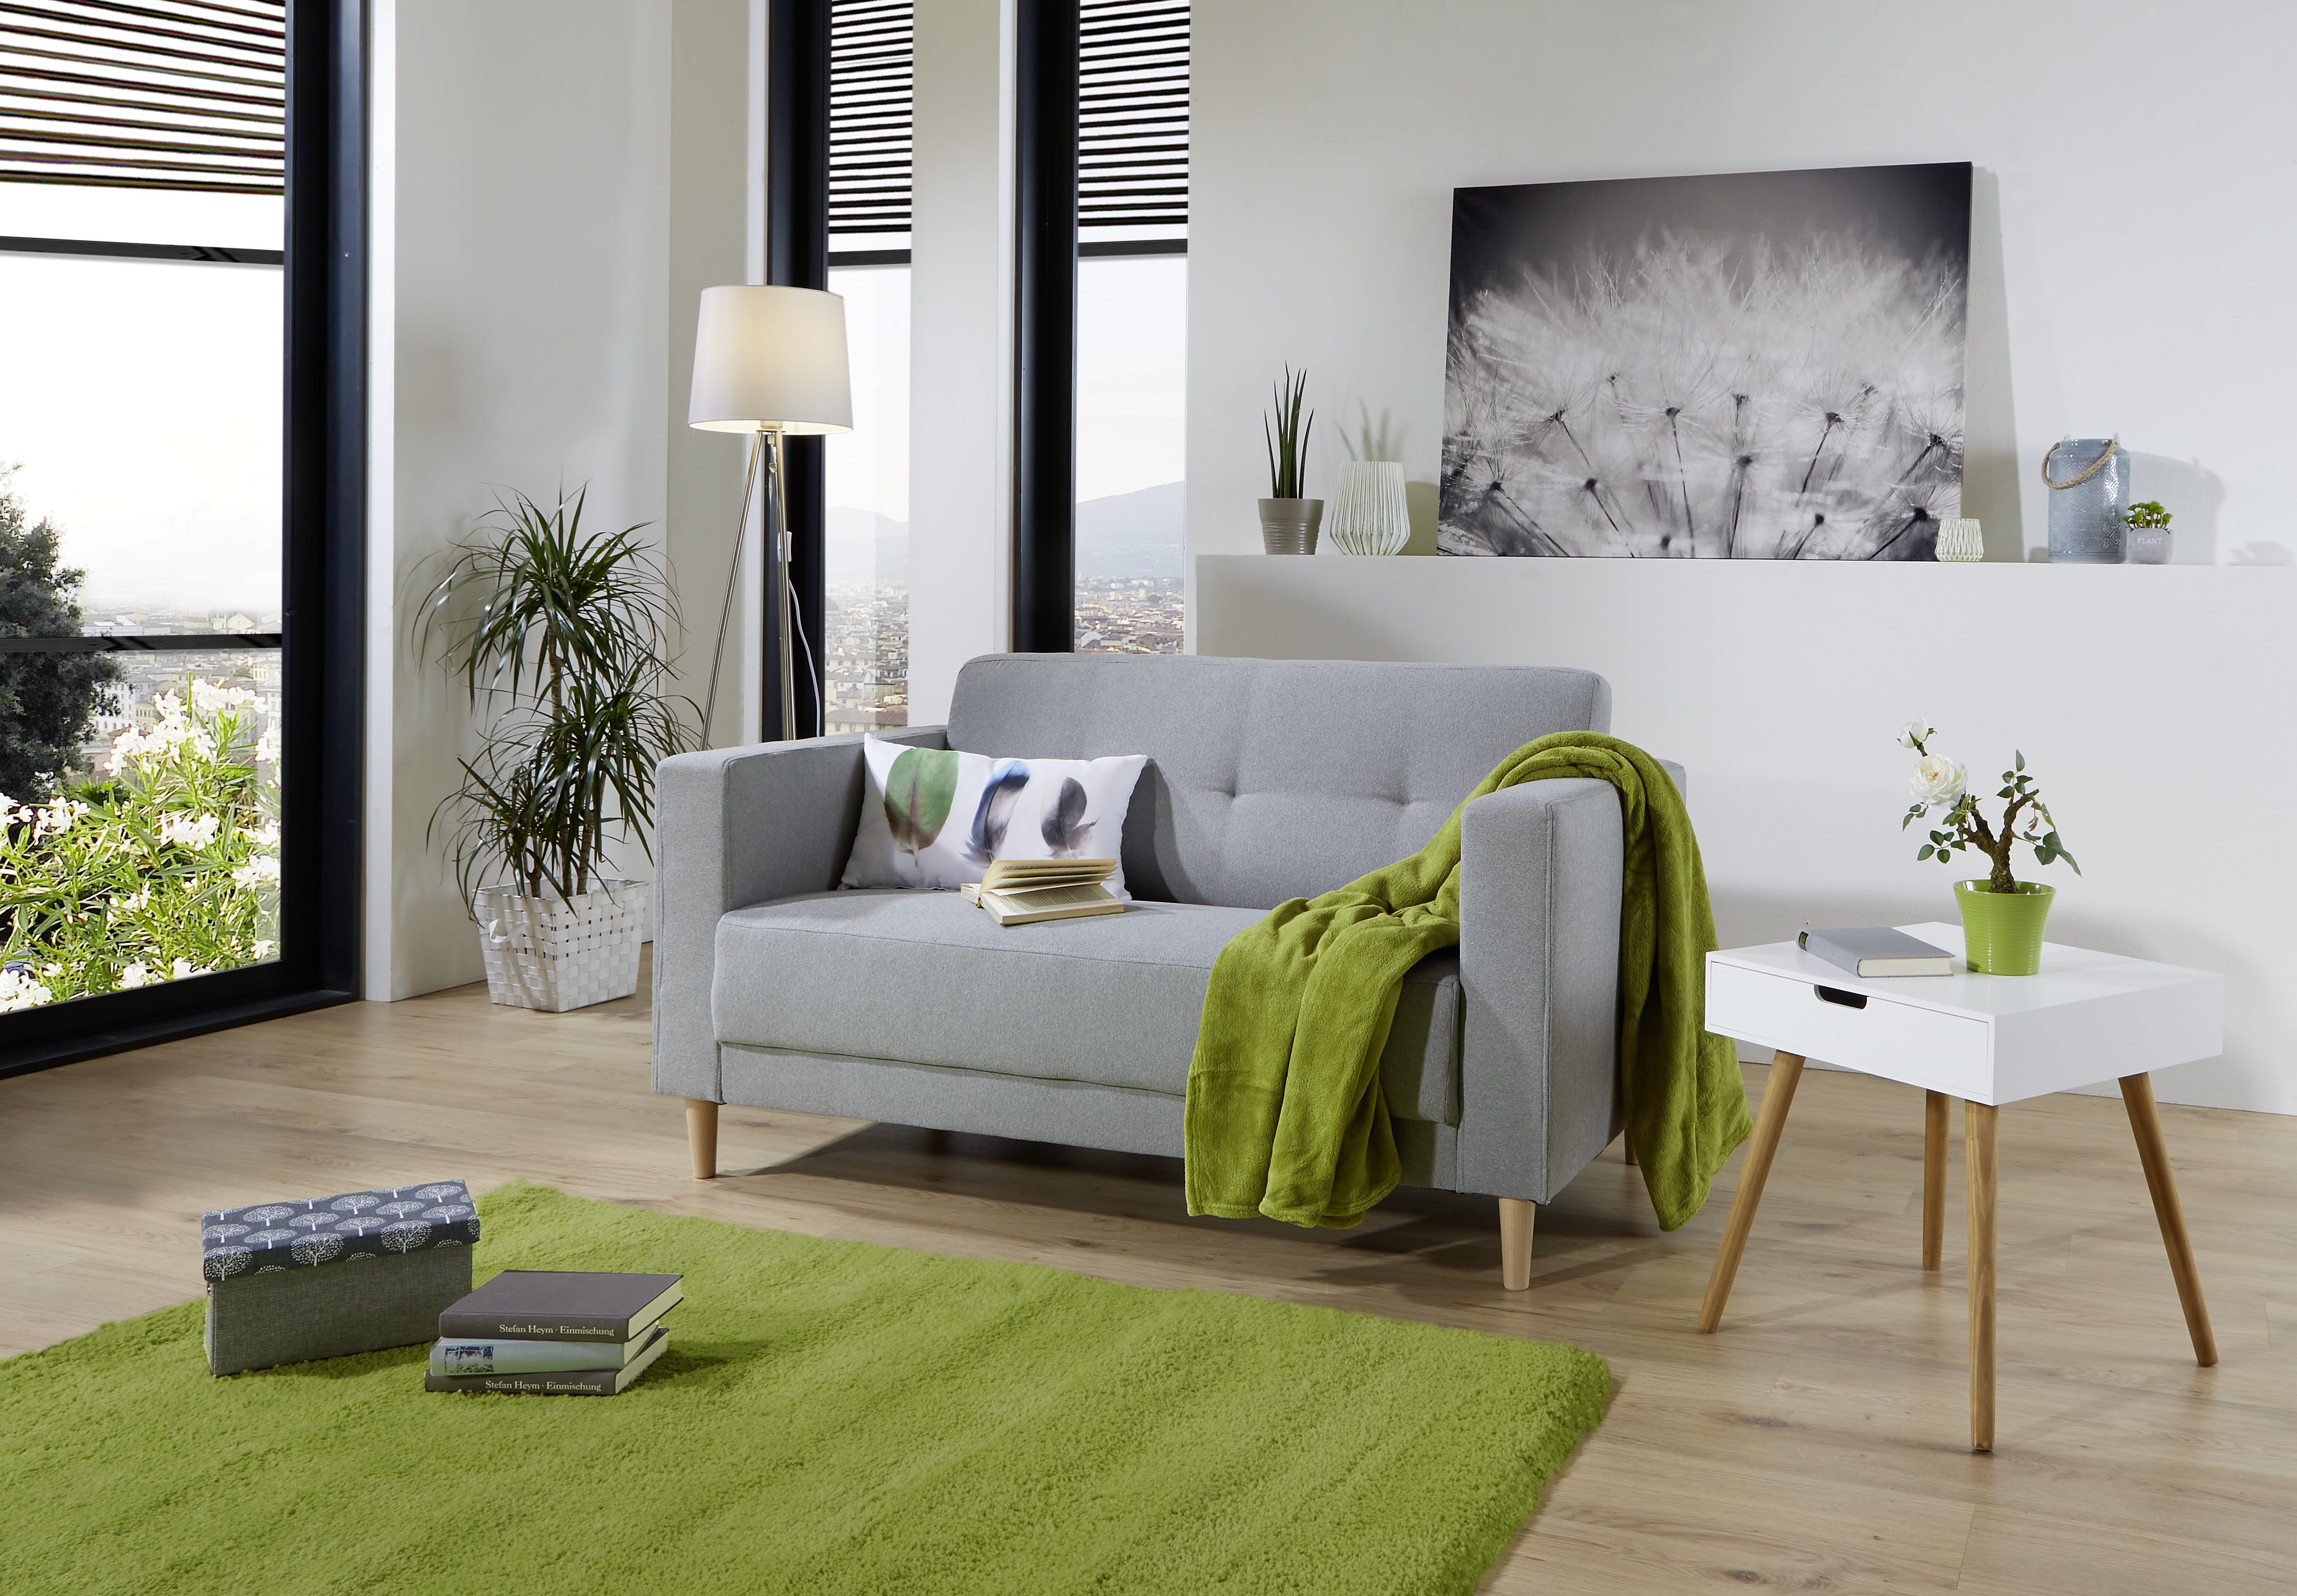 Zweisitzer-Sofa Geneve Webstoff - Hellgrau/Naturfarben, MODERN, Textil (148/81/75cm)